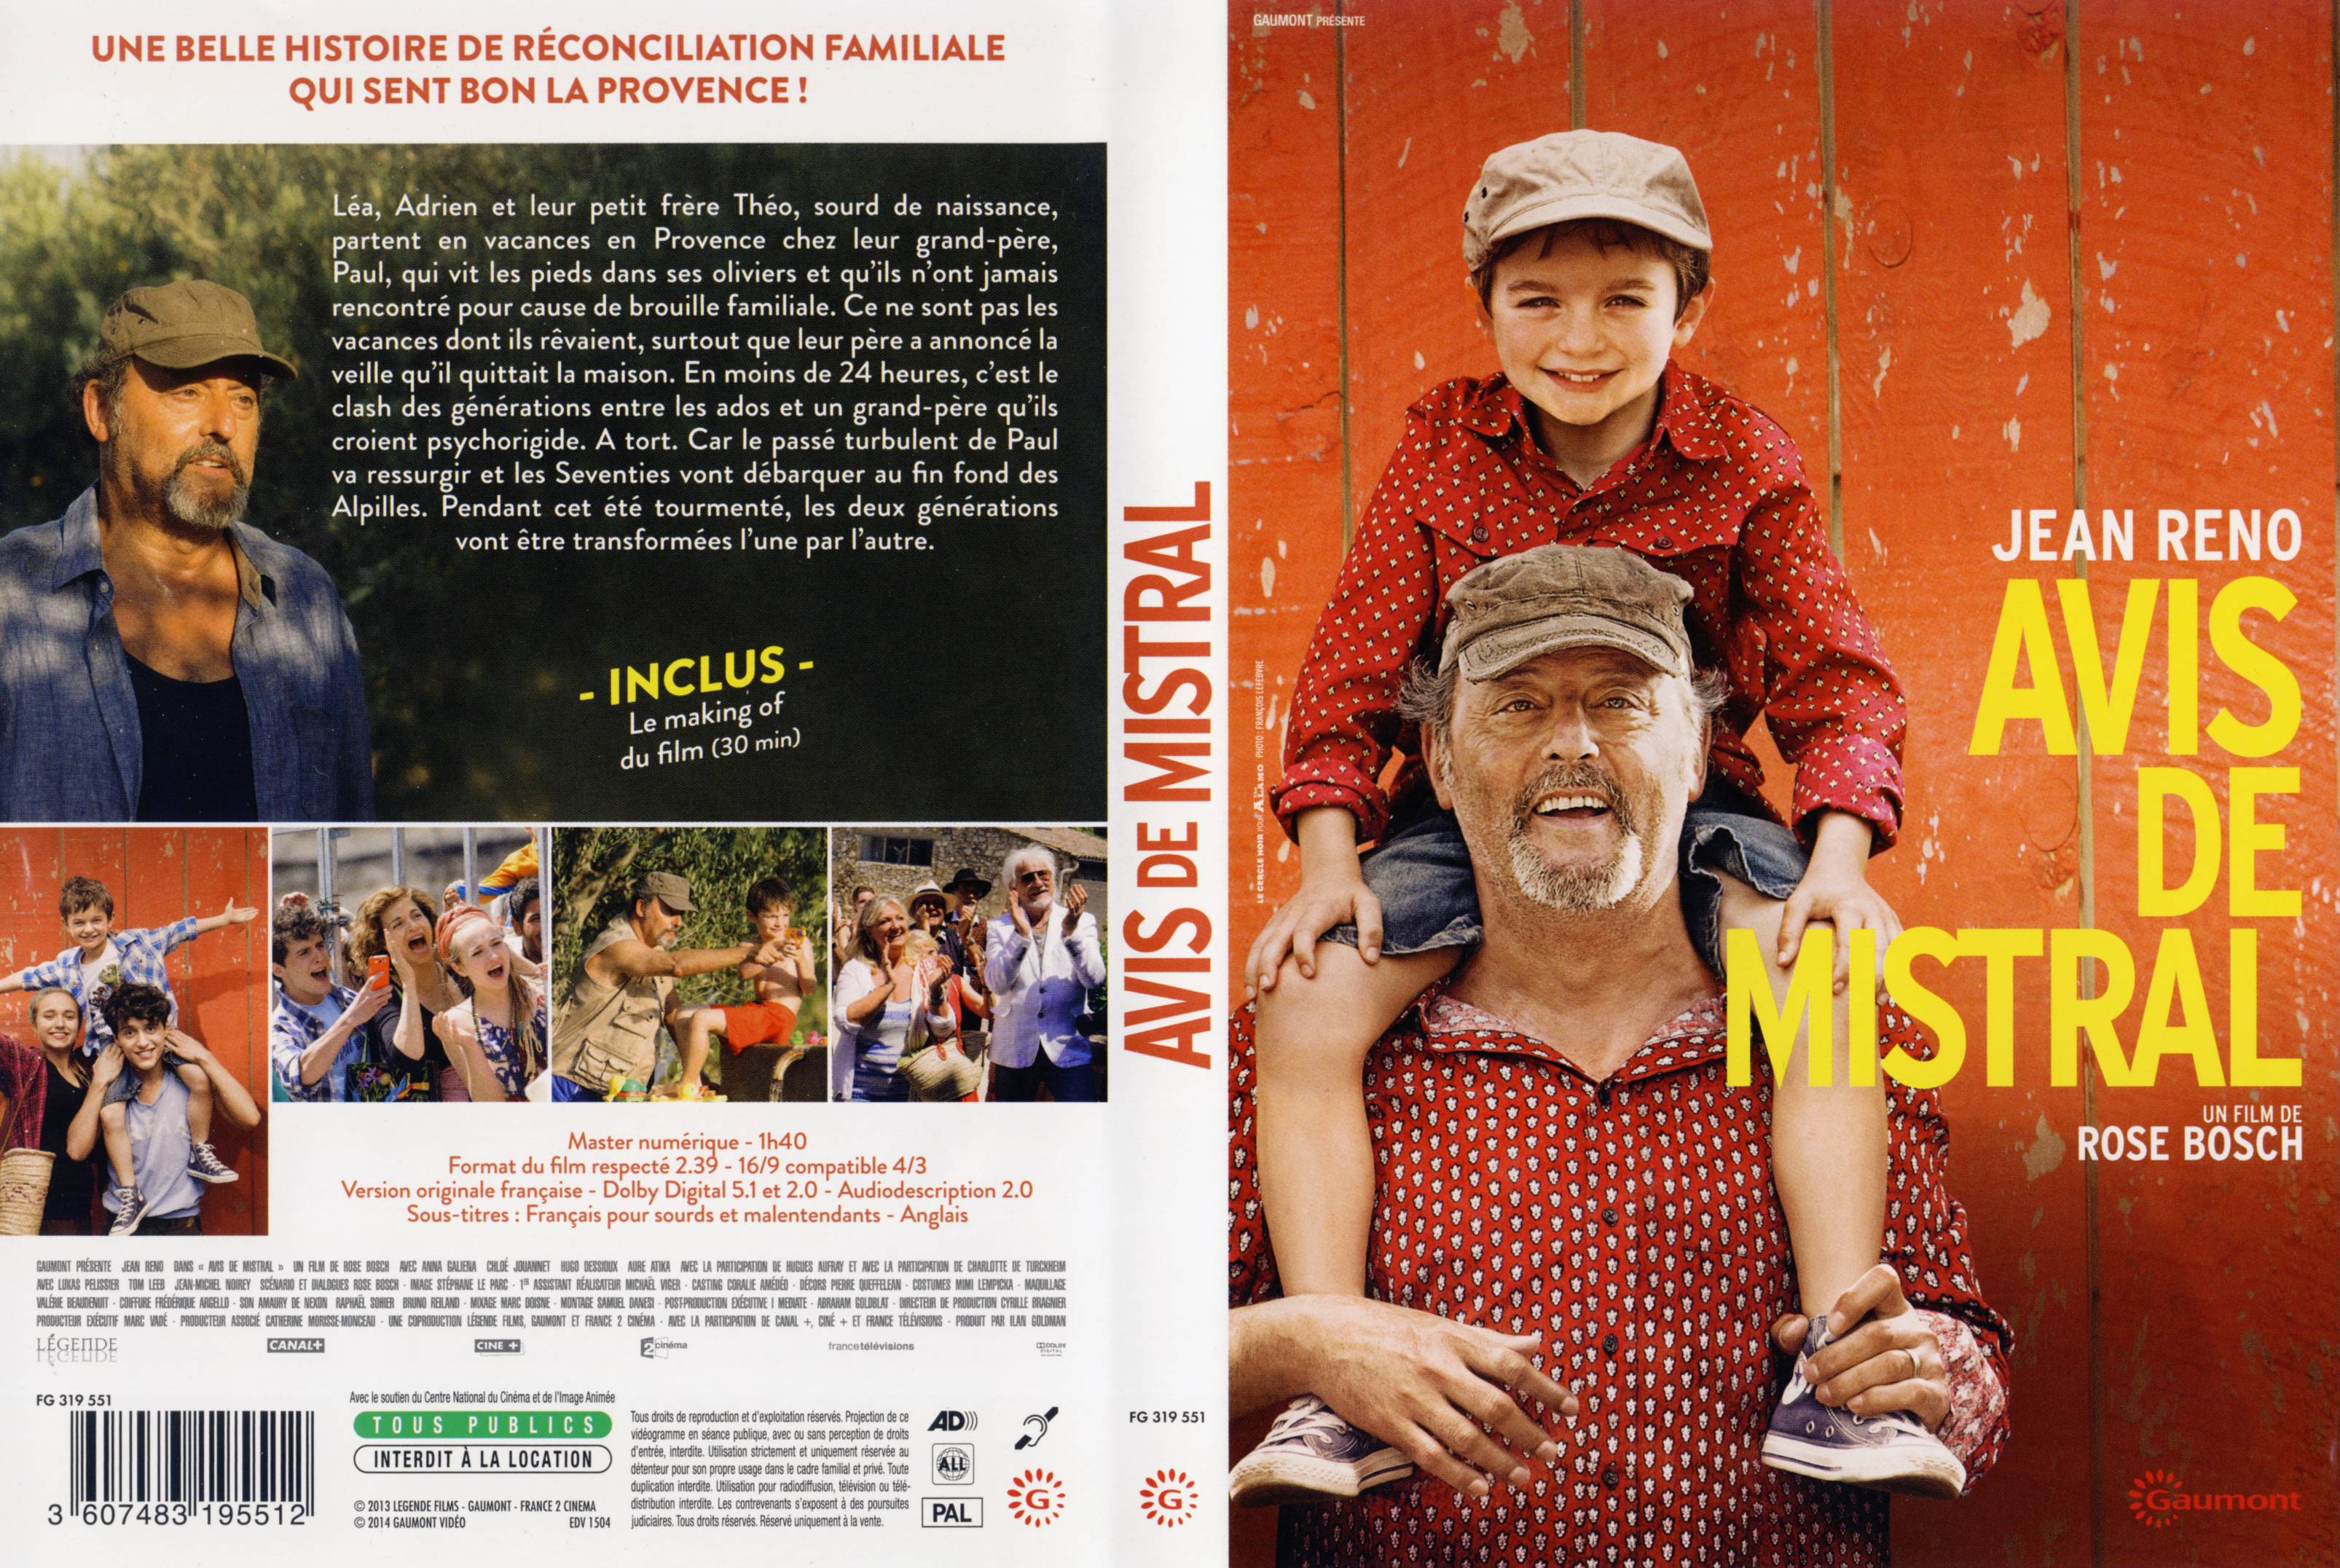 Jaquette DVD Avis de Mistral